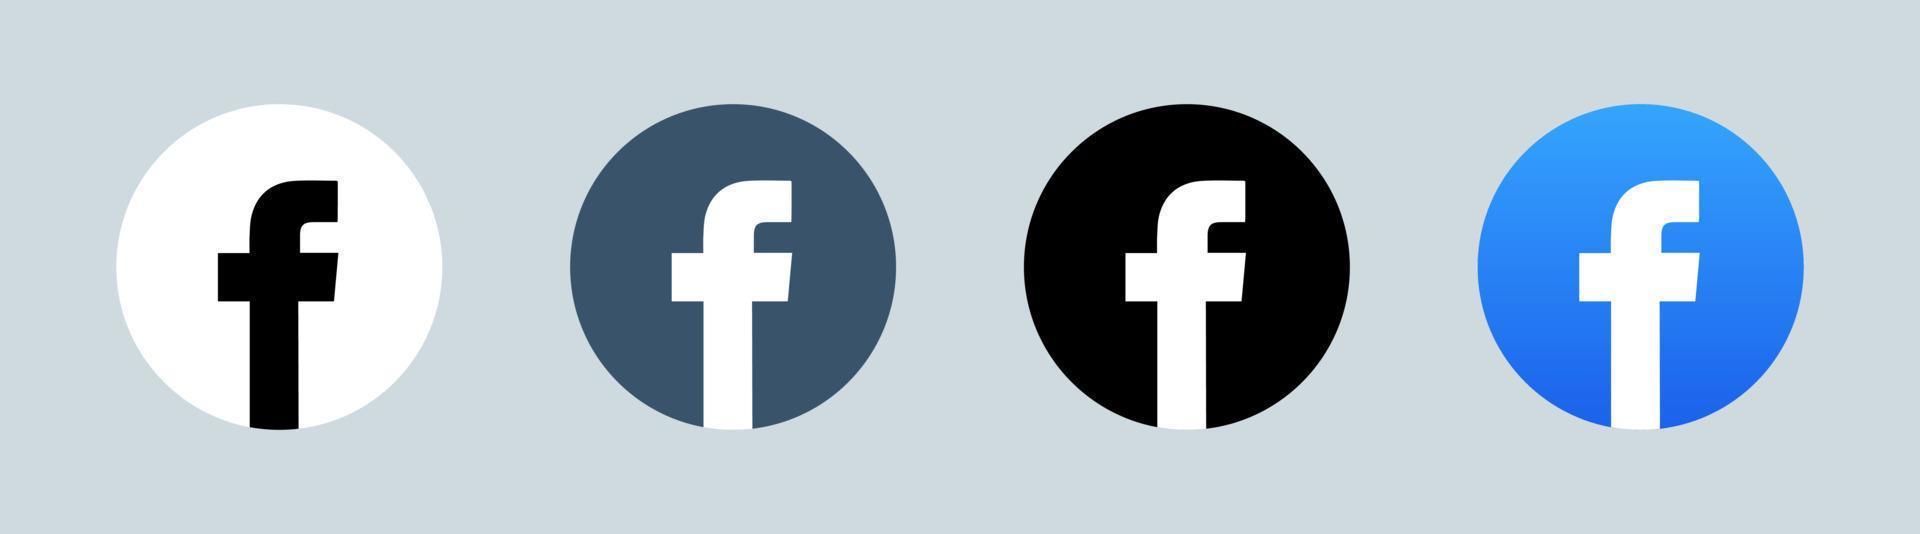 logotipo de facebook en forma de círculo. logotipo popular de las redes sociales. vector